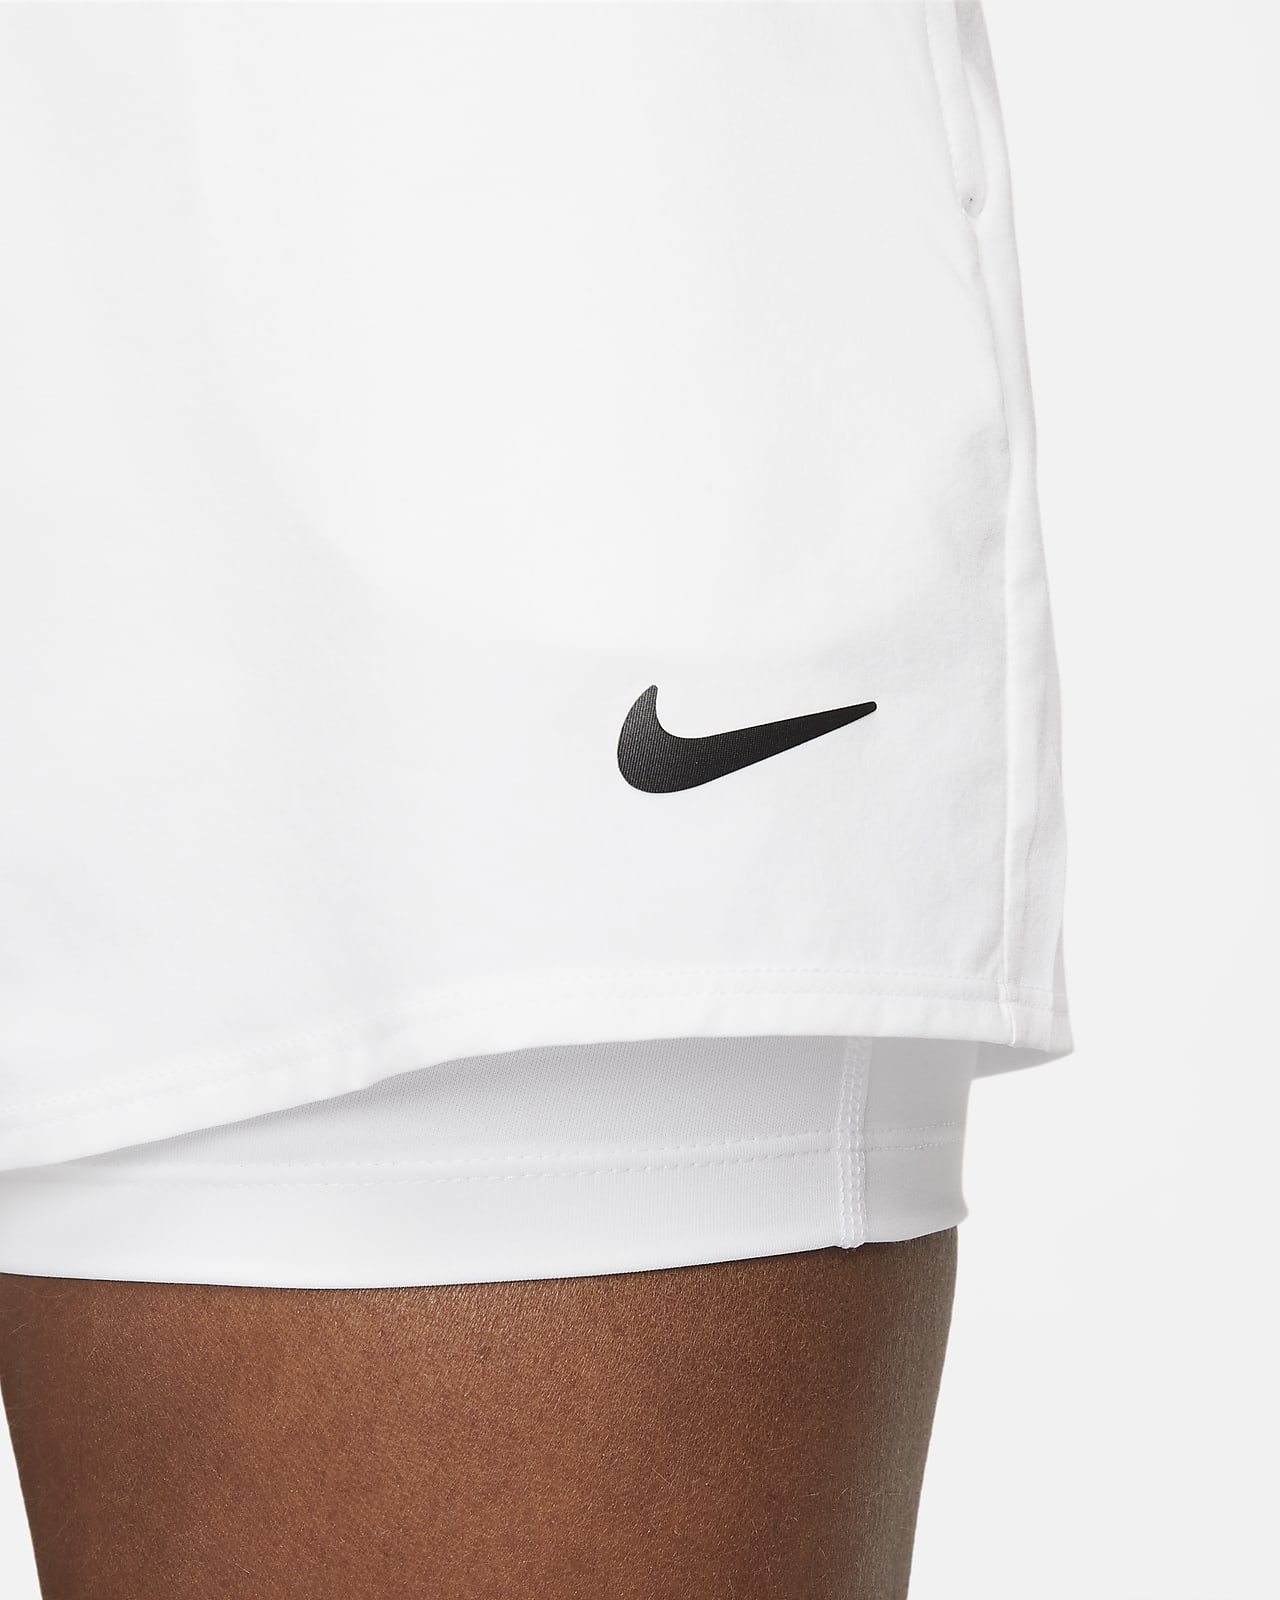 Women's Grey Shorts. Nike CA